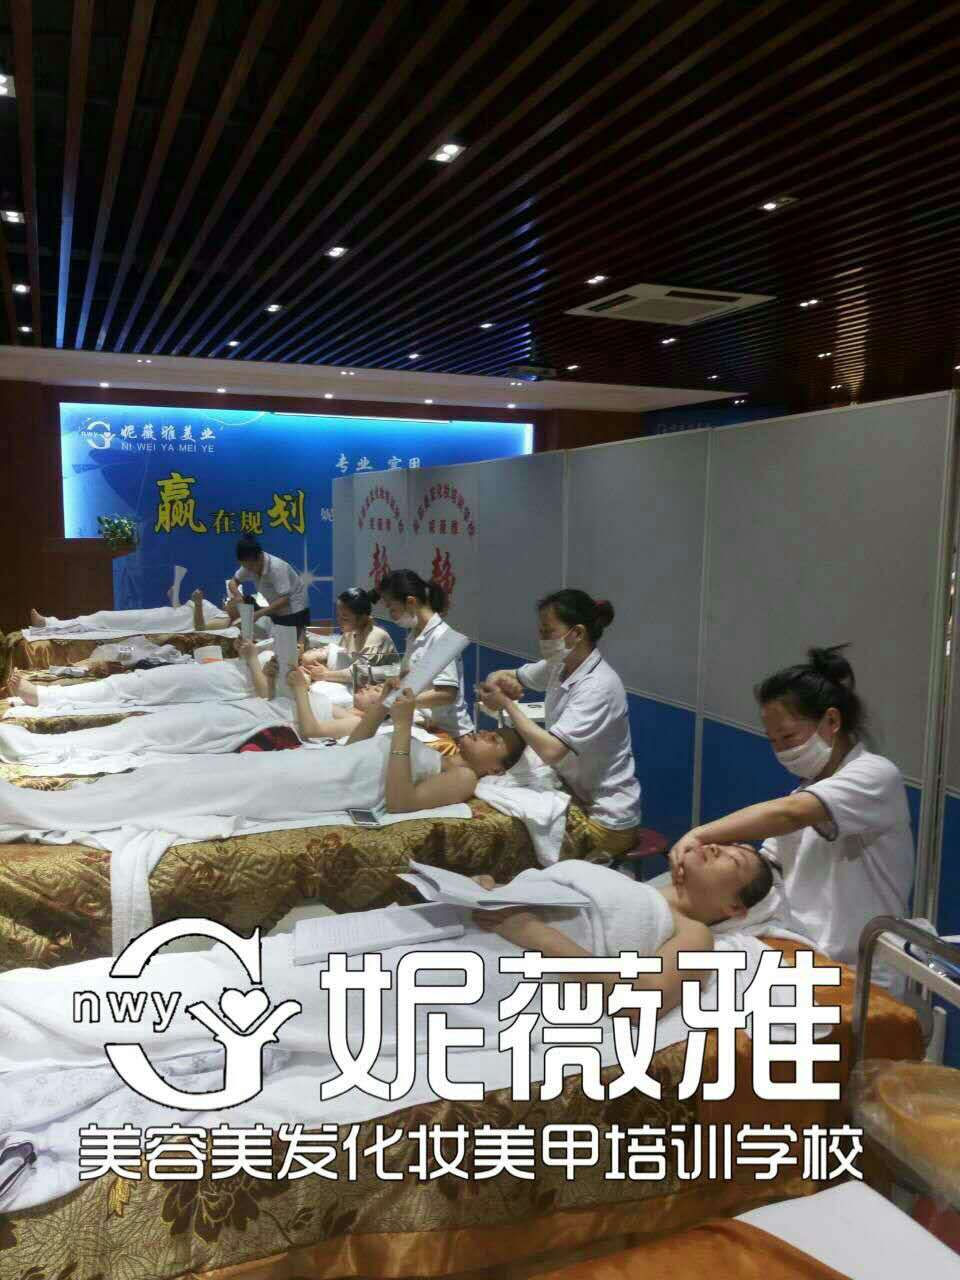 深圳市短期美容化妆培训学校精英美容师班厂家短期美容化妆培训学校精英美容师班